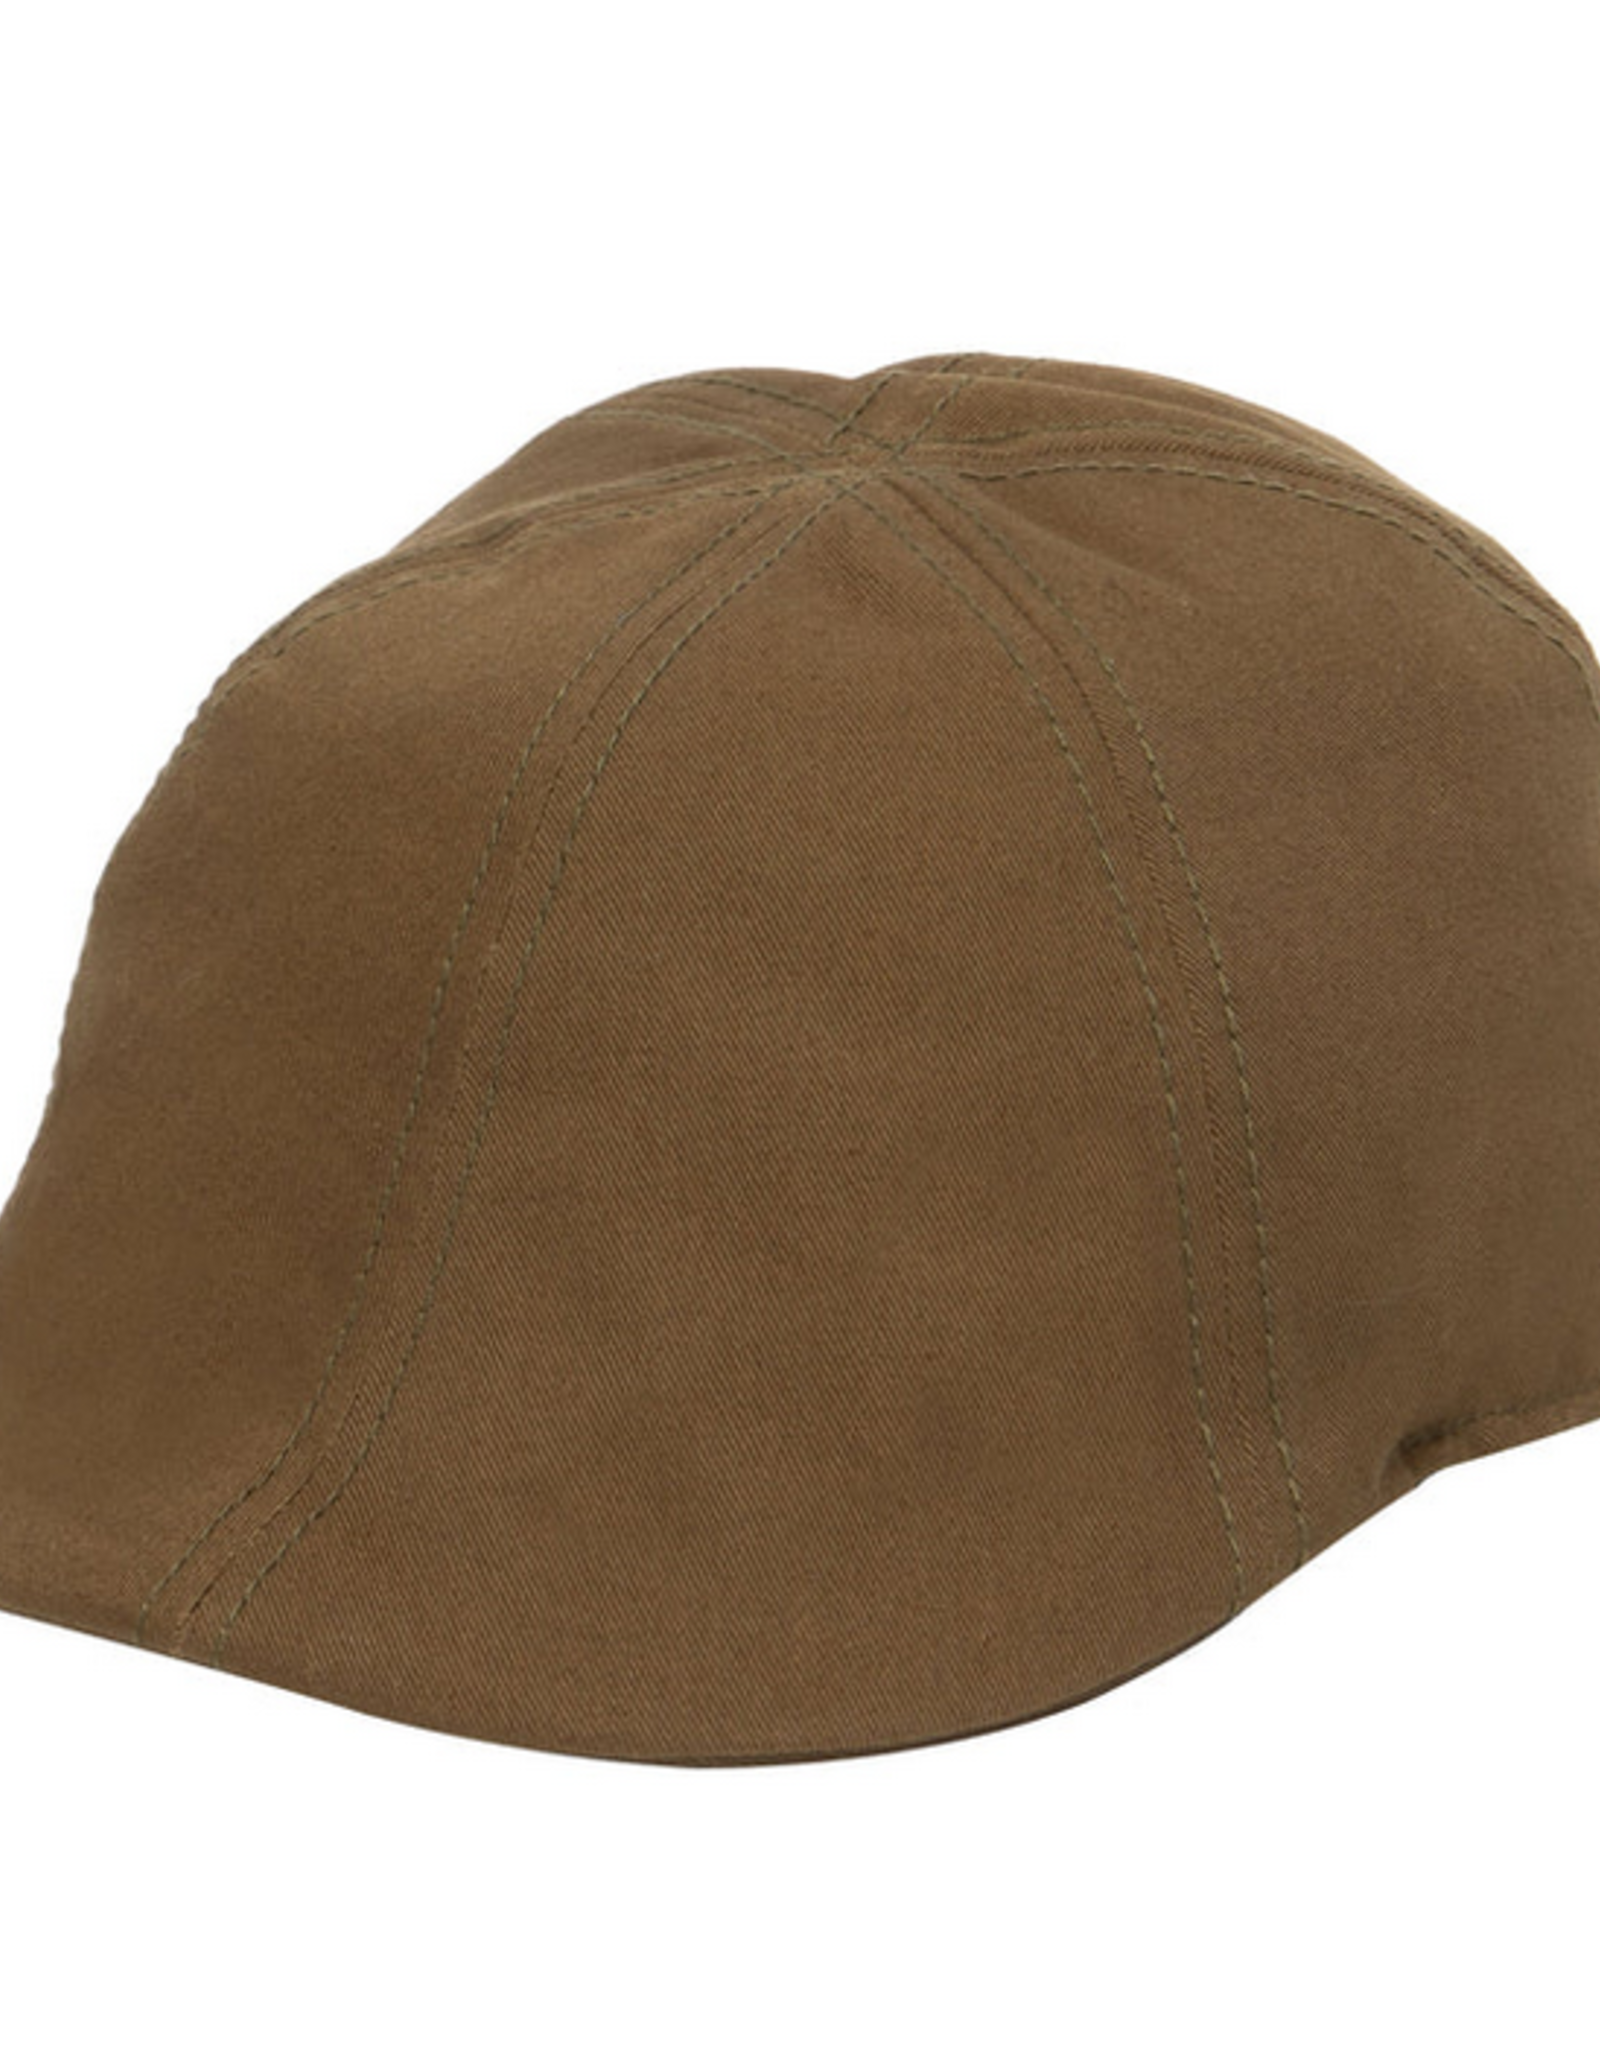 HAT-IVY CAP